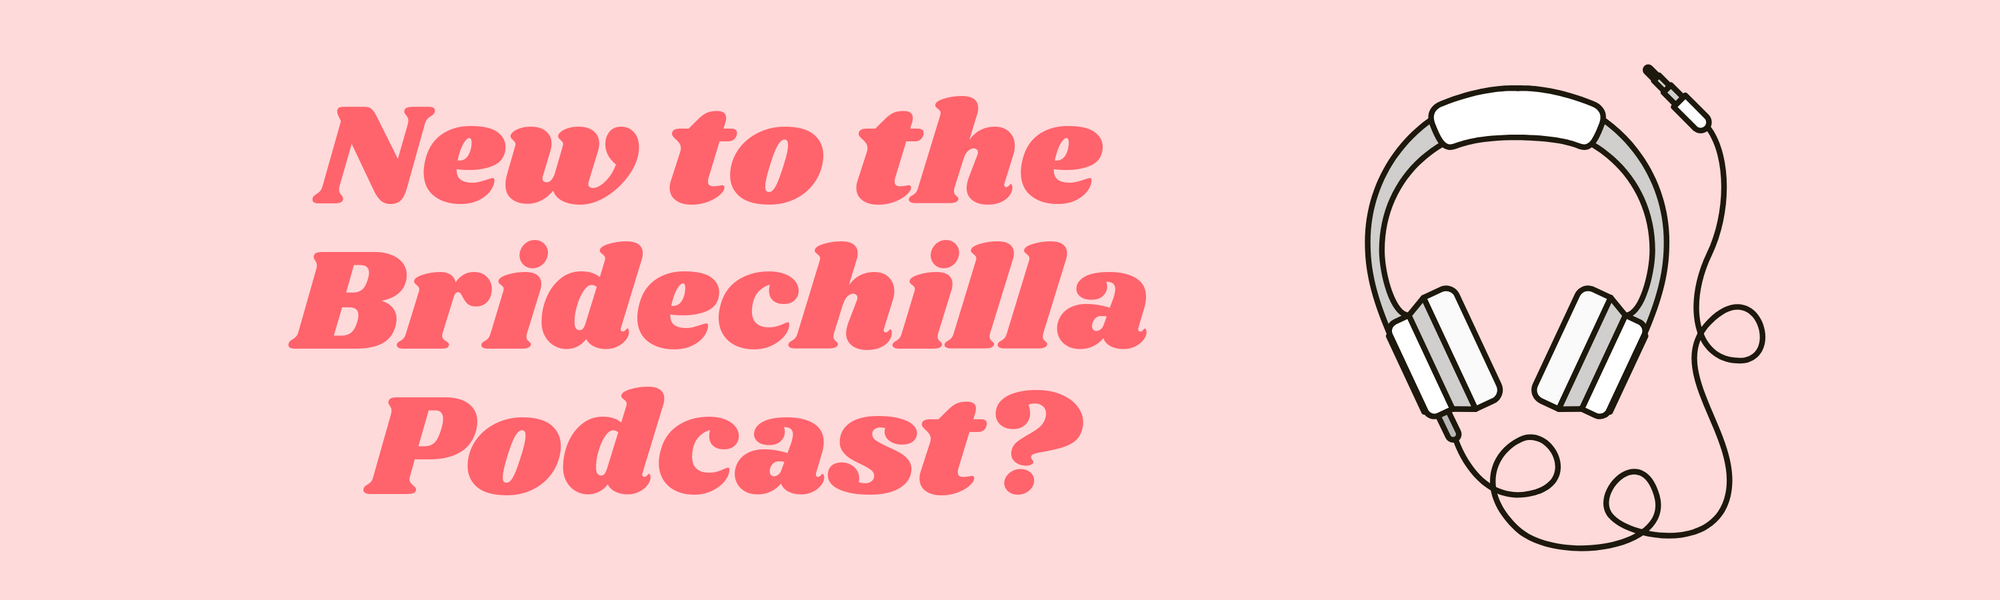 New to The Bridechilla Podcast?